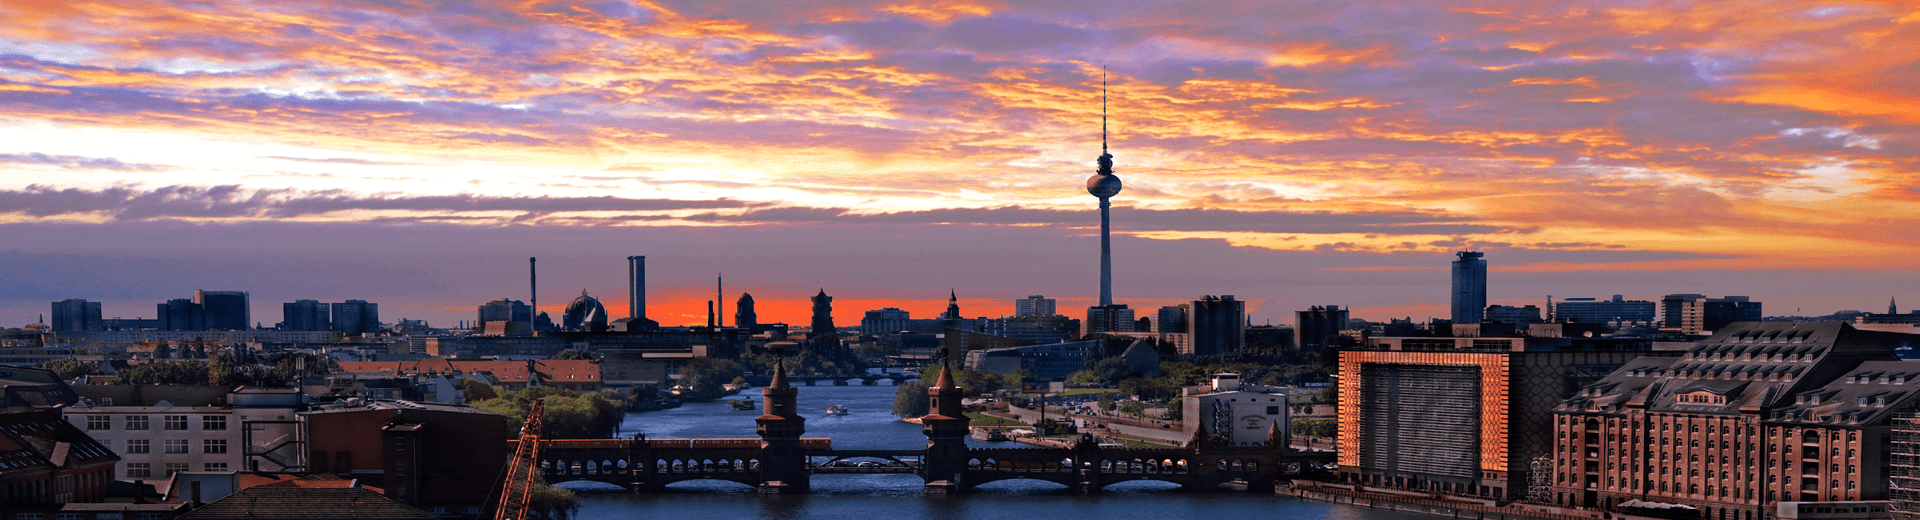 נופש בברלין | טיפים לטיול